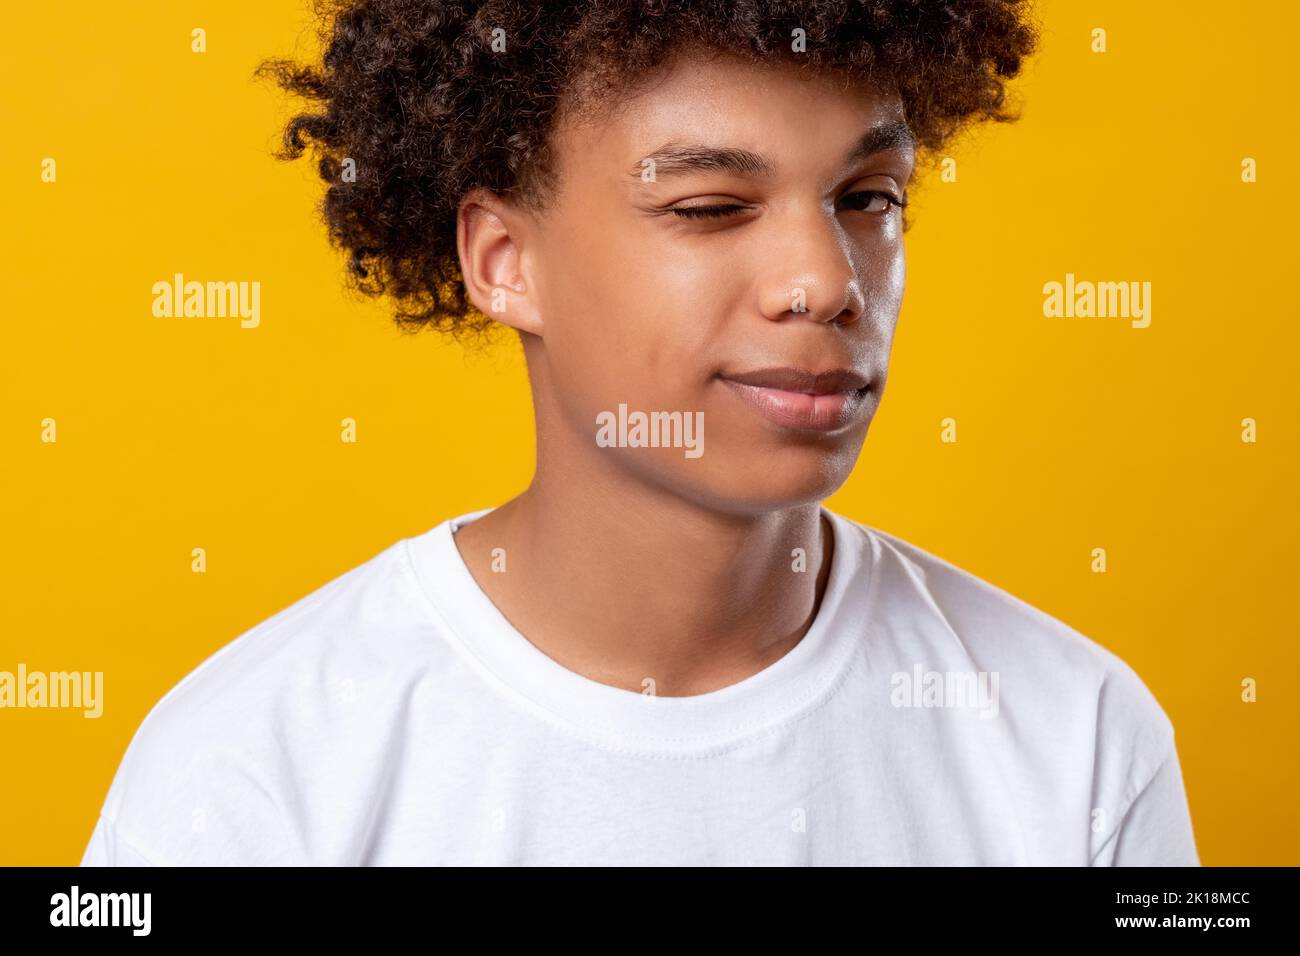 Schwarzes Teenager-Porträt. Positive Stimmung. Lächelnder afrikanischer Student, der die Kamera blinzelnd ansieht. Auf orangefarbenem Kopierbereich isoliert. Ethnische Toleranz. Konfi Stockfoto